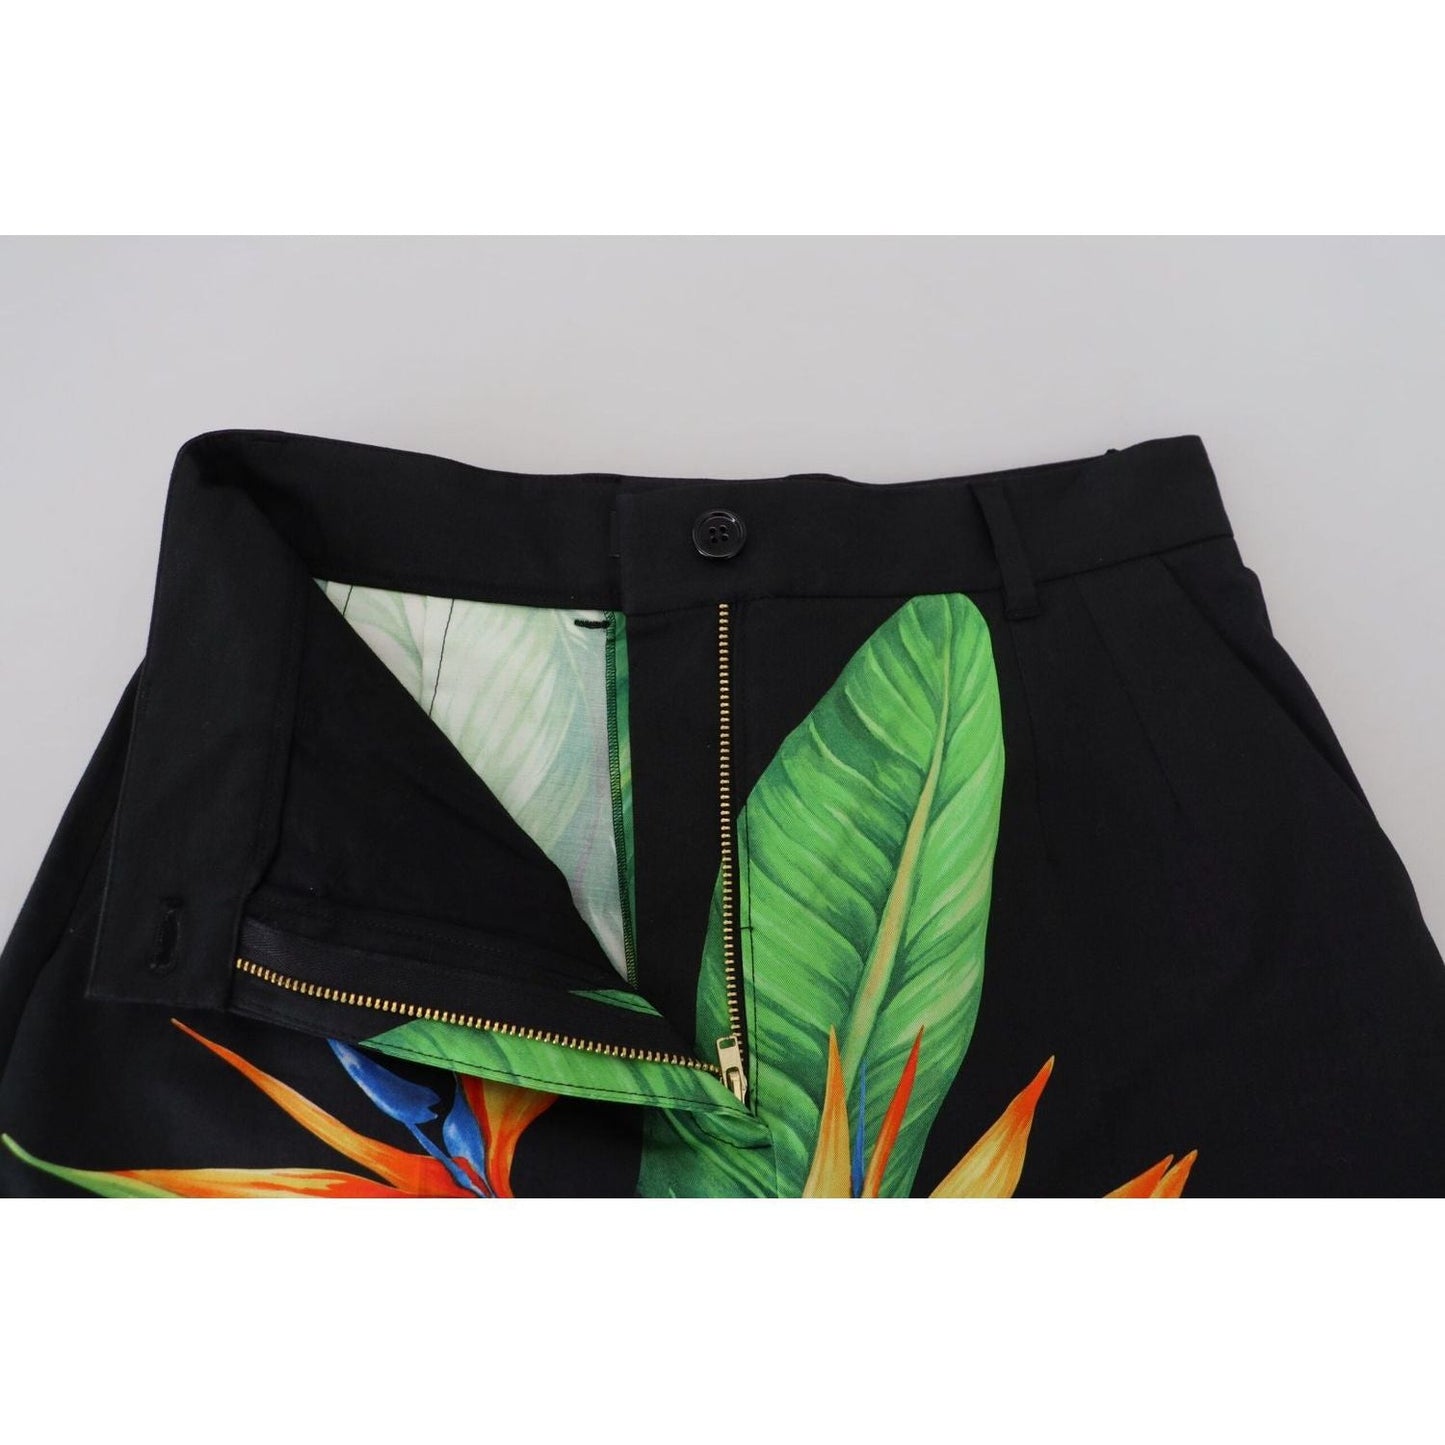 Dolce & Gabbana High Waist Hot Pants Shorts in Black Leaves Print black-leaves-print-high-waist-hot-pants-shorts